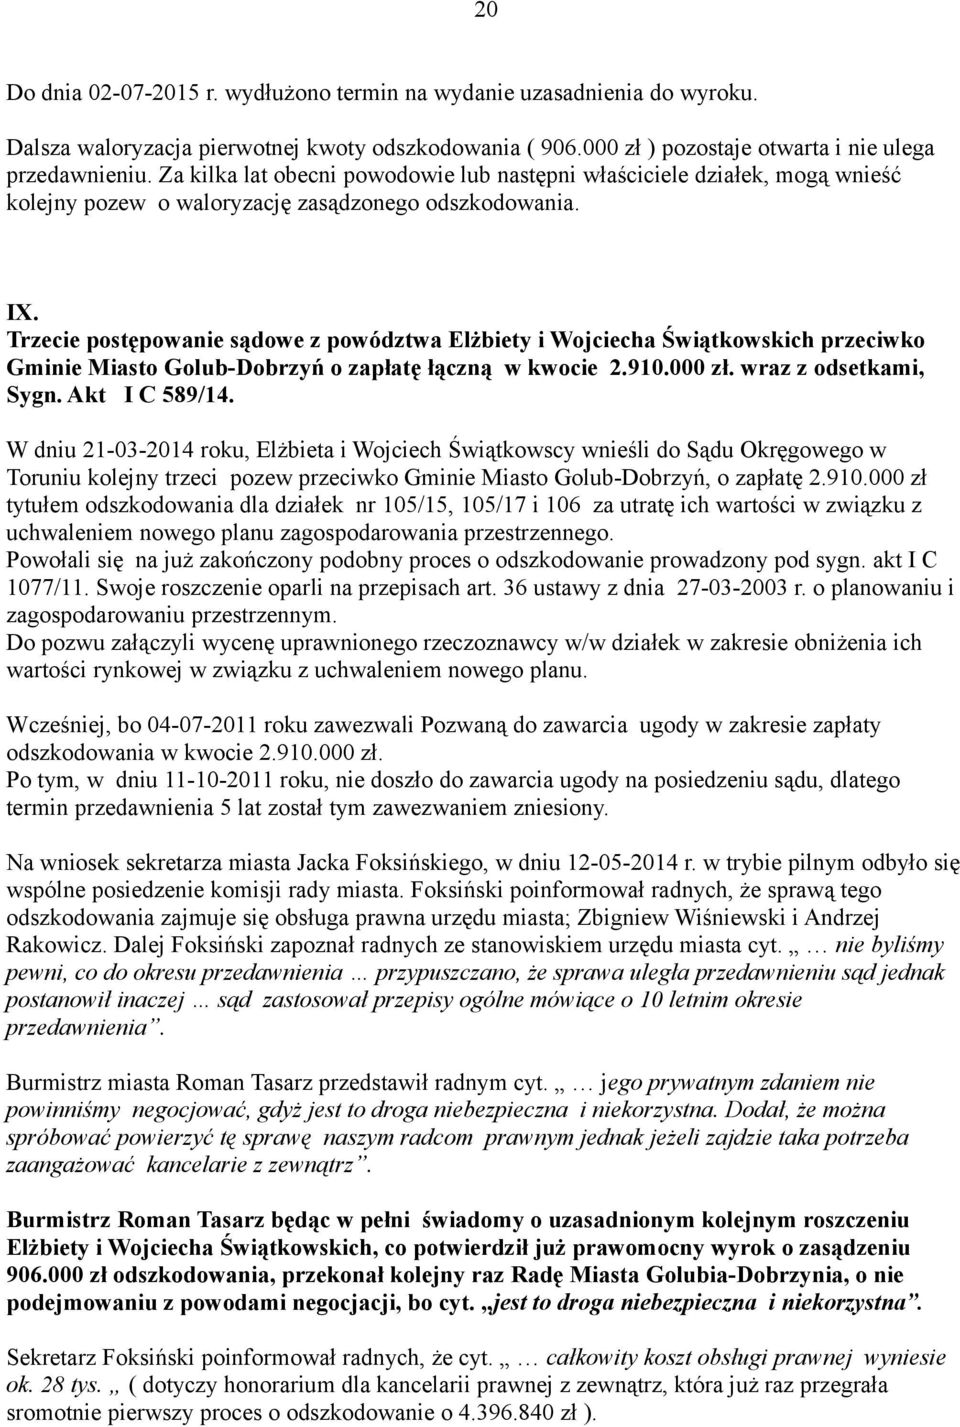 Trzecie postępowanie sądowe z powództwa Elżbiety i Wojciecha Świątkowskich przeciwko Gminie Miasto Golub-Dobrzyń o zapłatę łączną w kwocie 2.910.000 zł. wraz z odsetkami, Sygn. Akt I C 589/14.